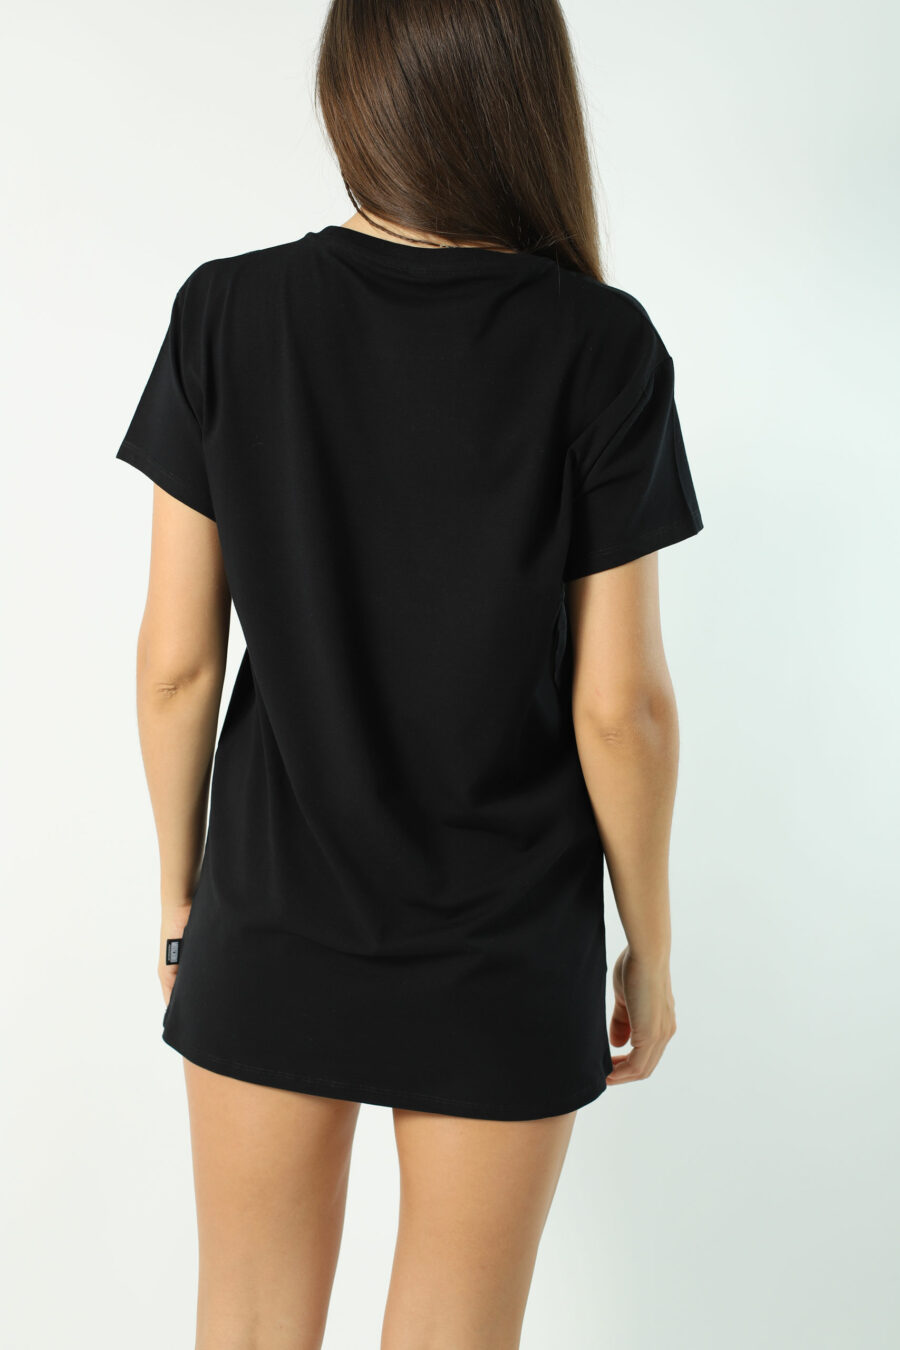 Camiseta maxi negra con minilogo oso underbear - Photos 2800